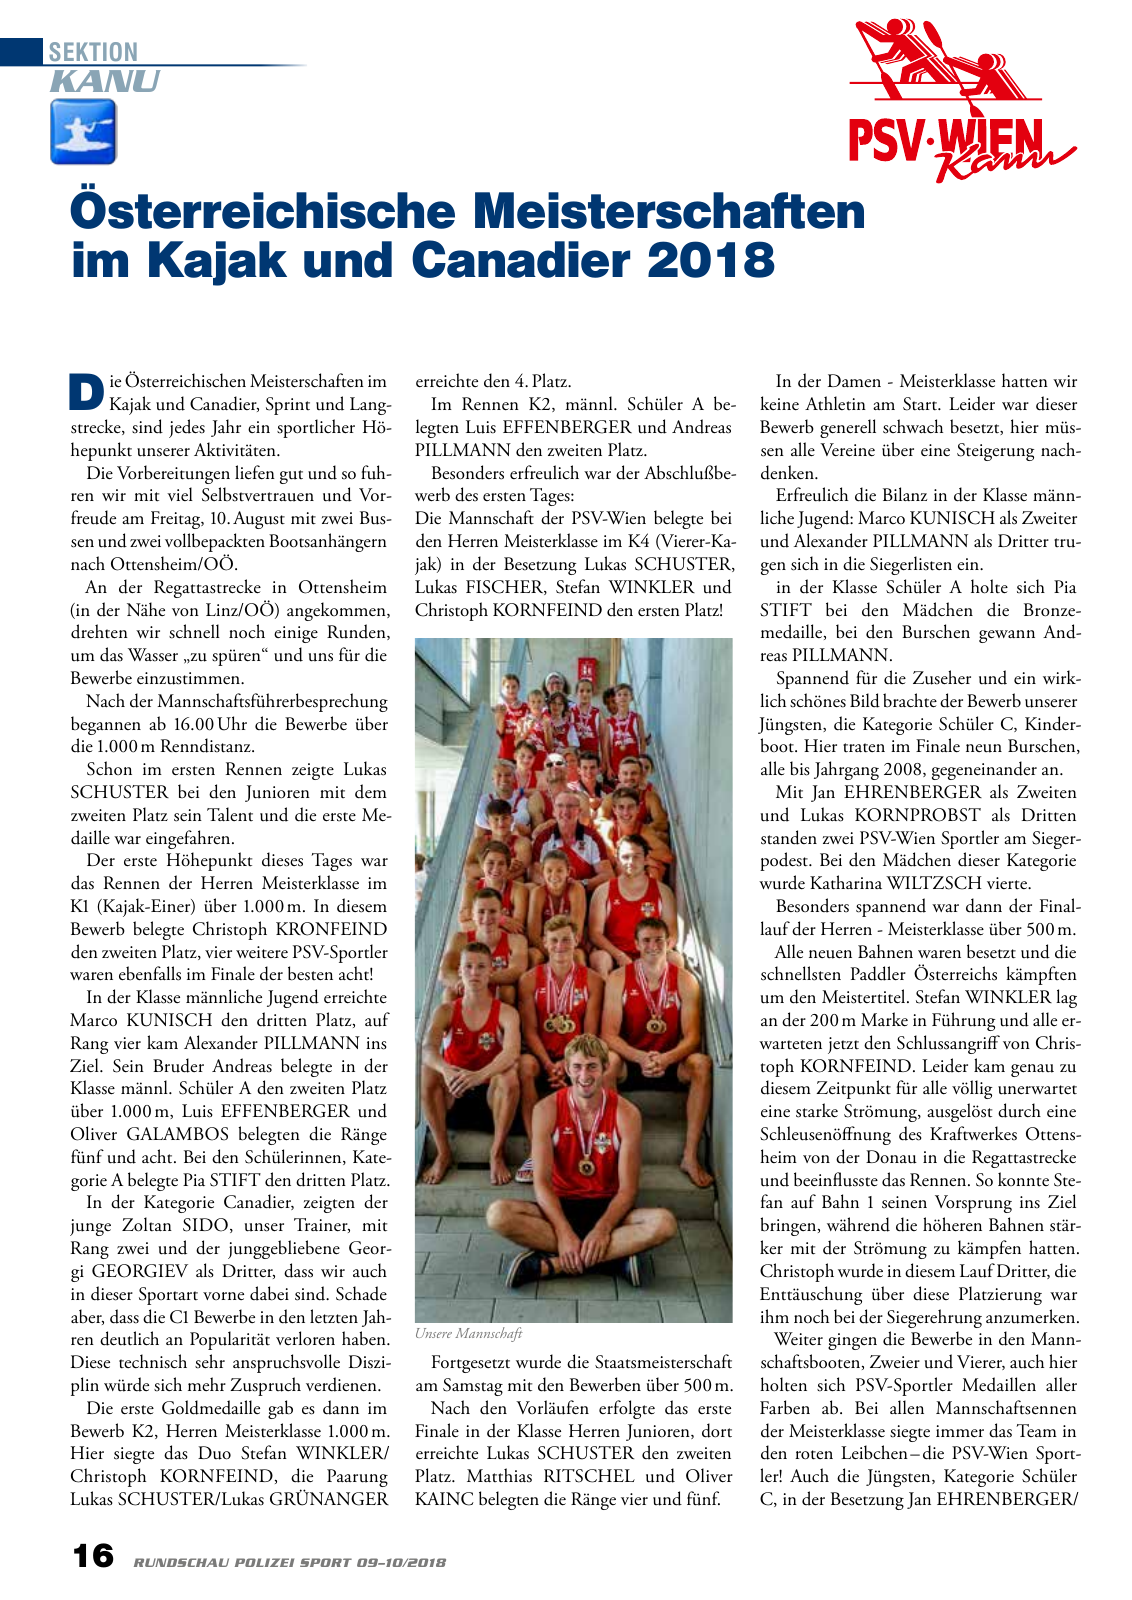 Vorschau Rundschau Polizei Sport 09-10/2018 Seite 16